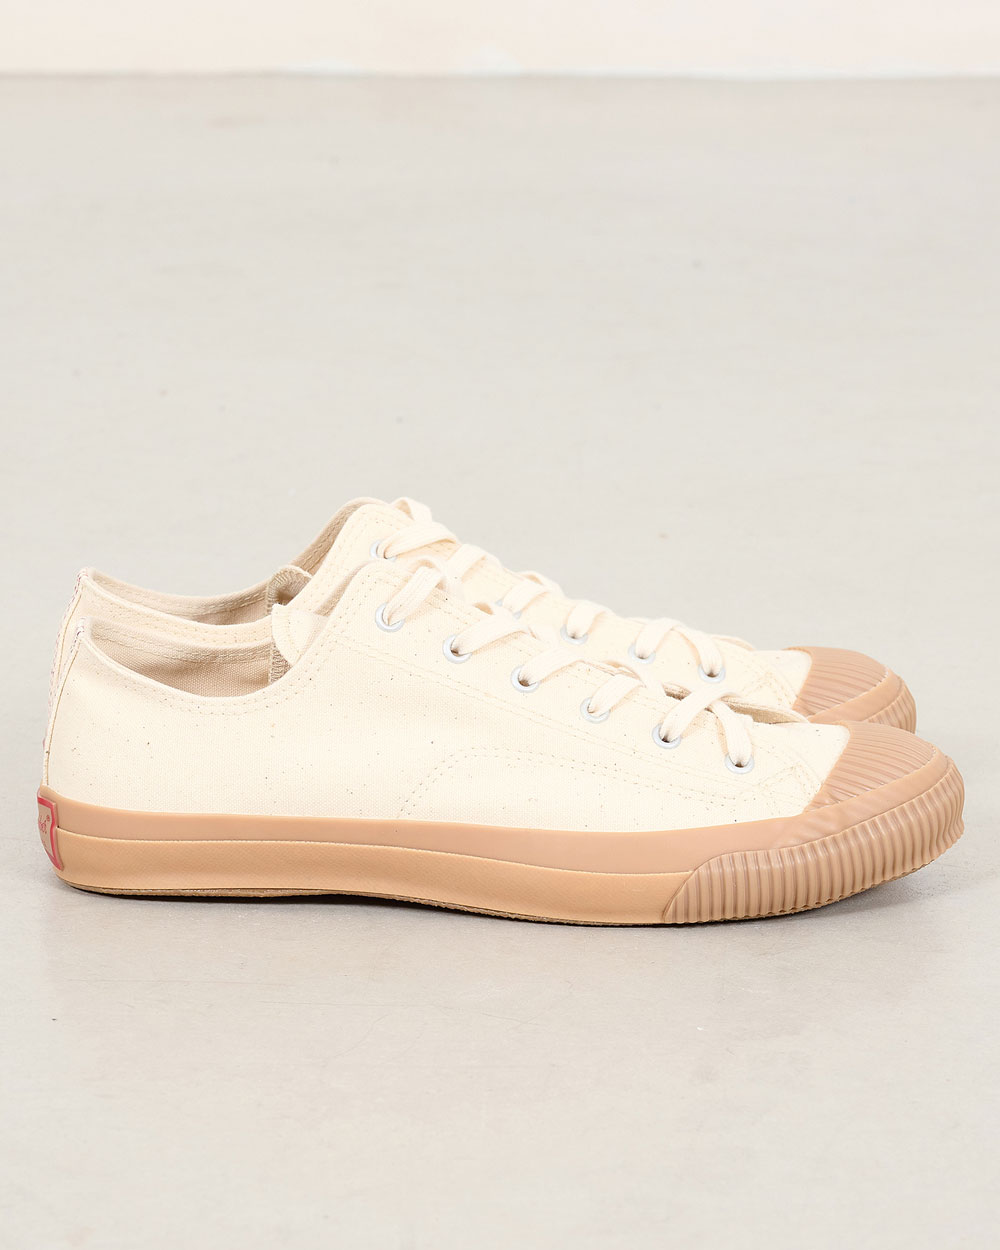 PRAS Shellcap Low Sneakers - Kinari/Gum